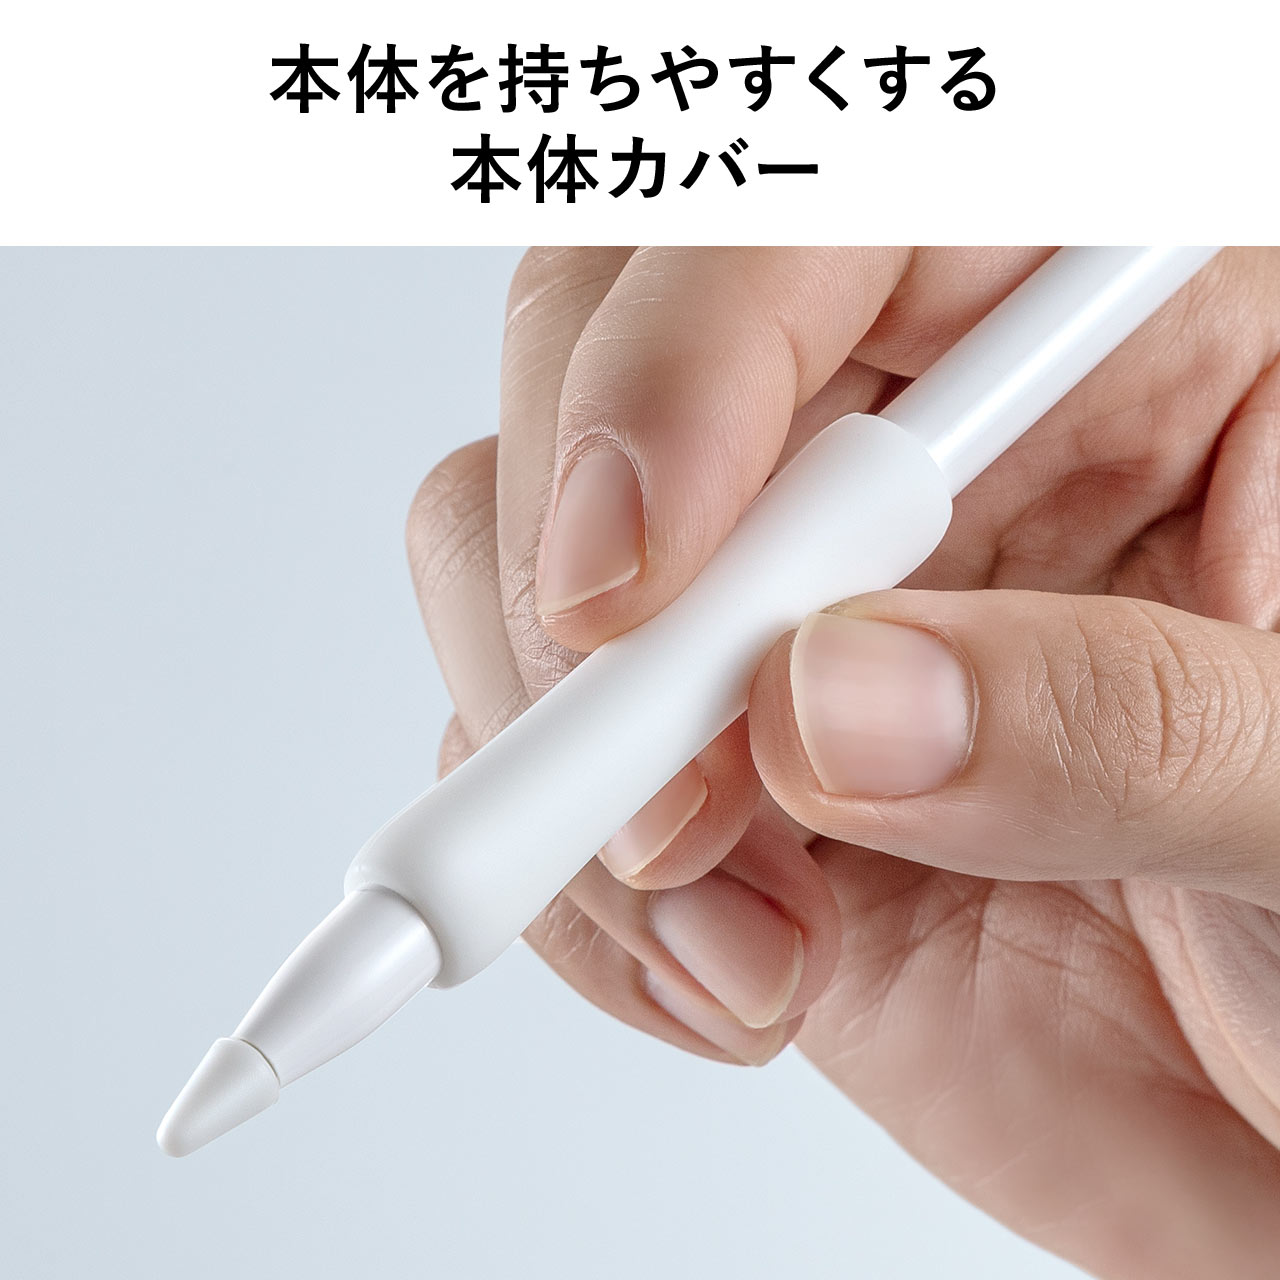 Apple Pencil 保護カバーセット 第1世代用 アップルペンシル 専用 iPad ペン先カバー×3個 本体カバー×1個 キャップホルダー×1個  シリコン 200-PEN038W